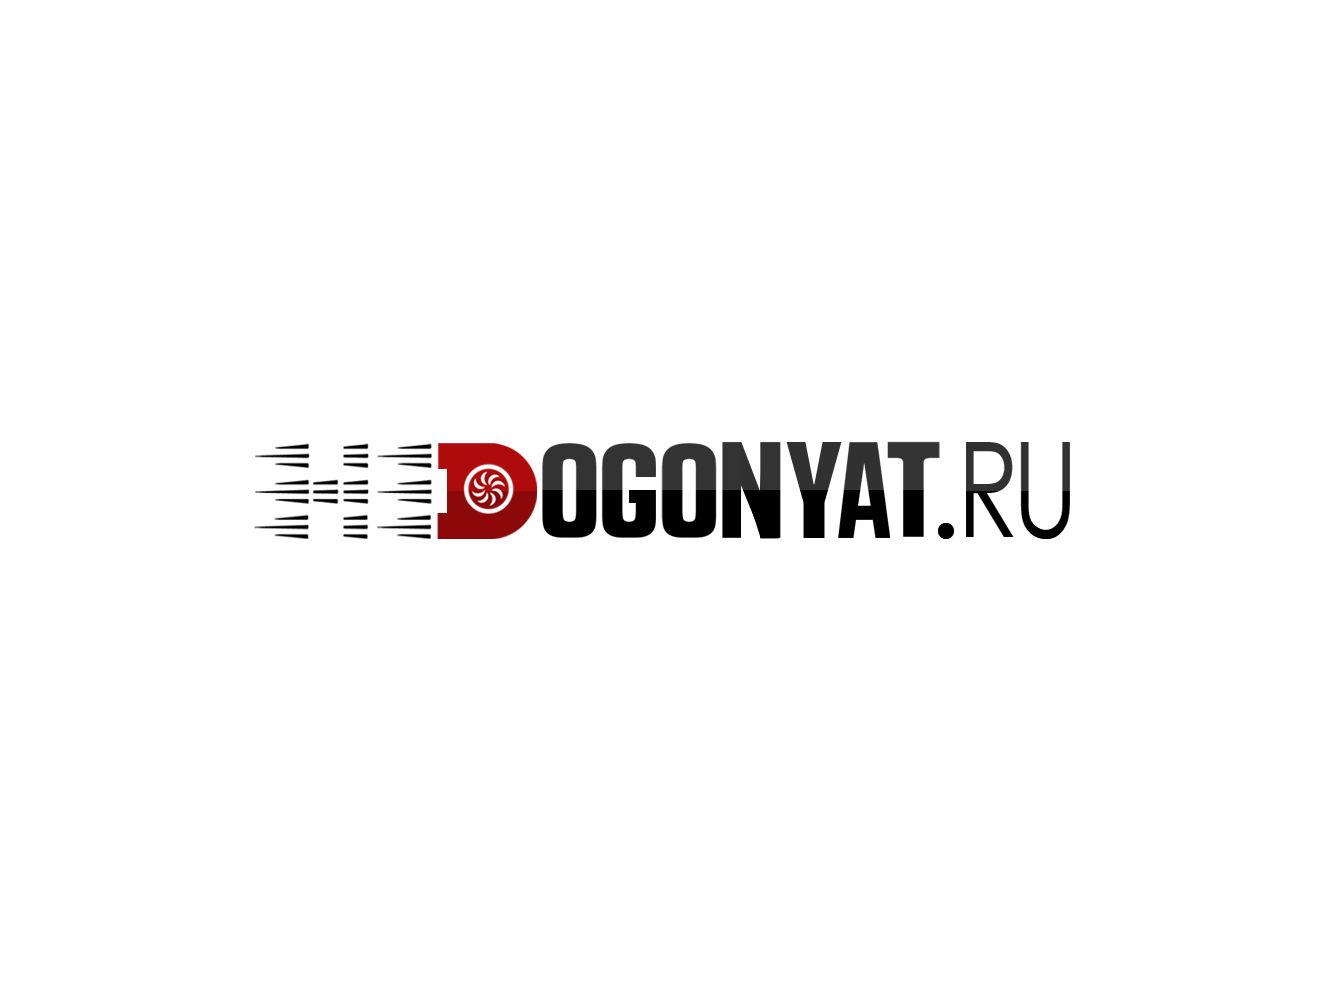 недогонят.рф / nedogonyat.ru - дизайнер webgrafika